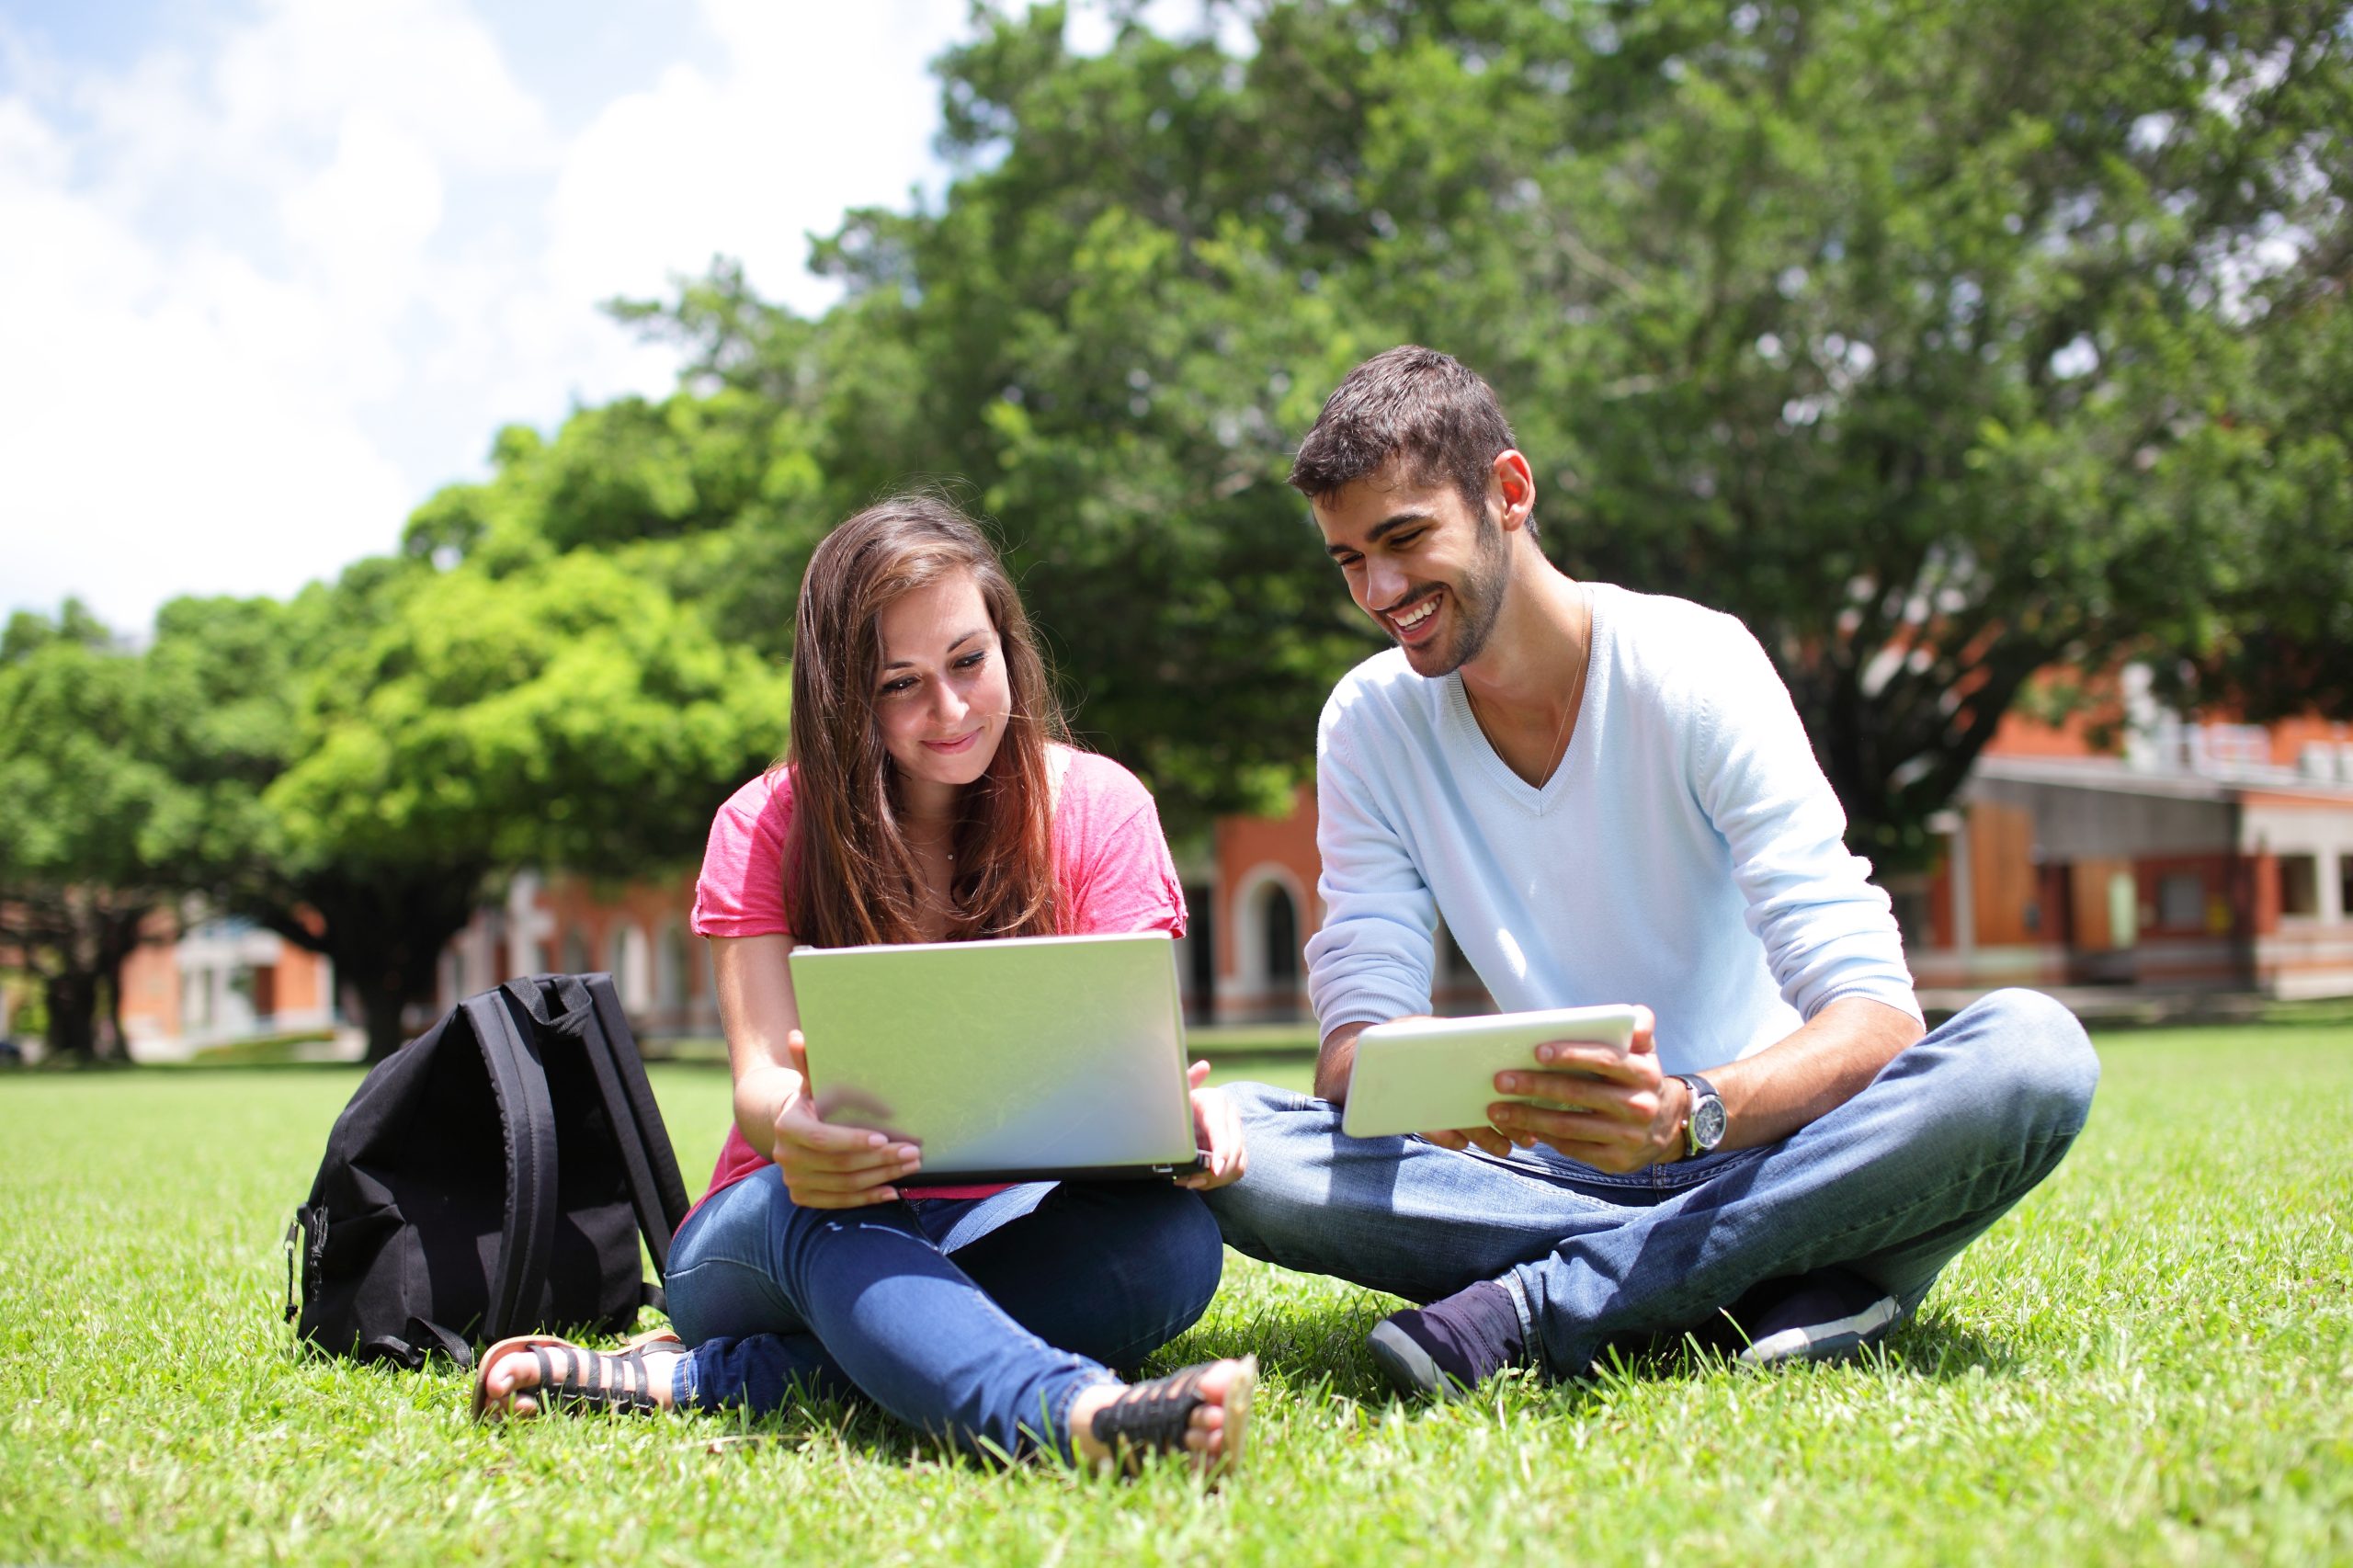 Reading on property. Студенты на природе с ноутбуком. Студенты в парке. Студент с ноутбуком. Парень с ноутбуком на природе.